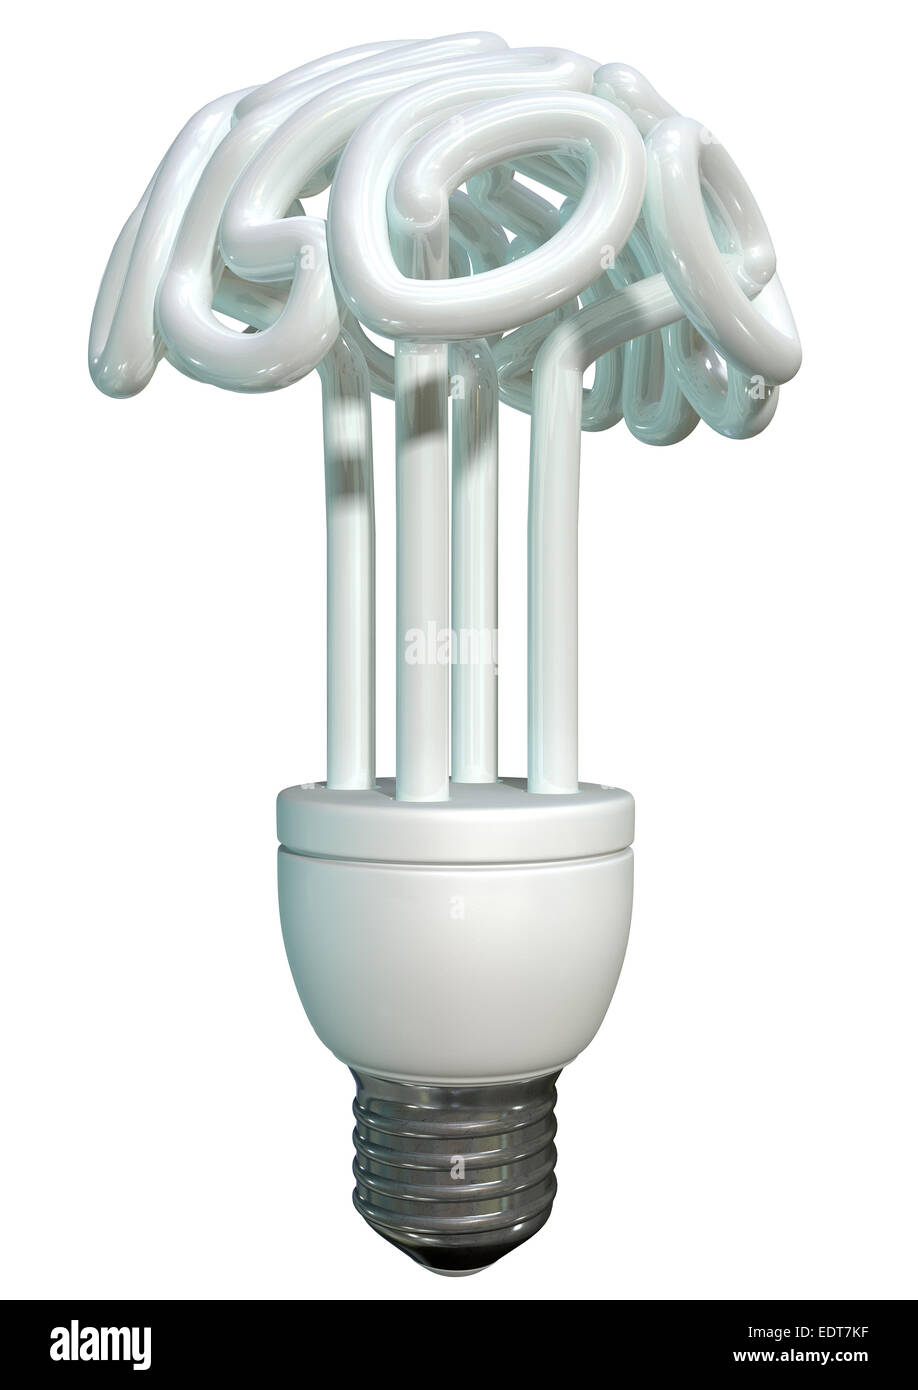 Una normale luce fluorescente lampadina nella forma di un cervello stilizzato isolato su un fondo bianco Foto Stock